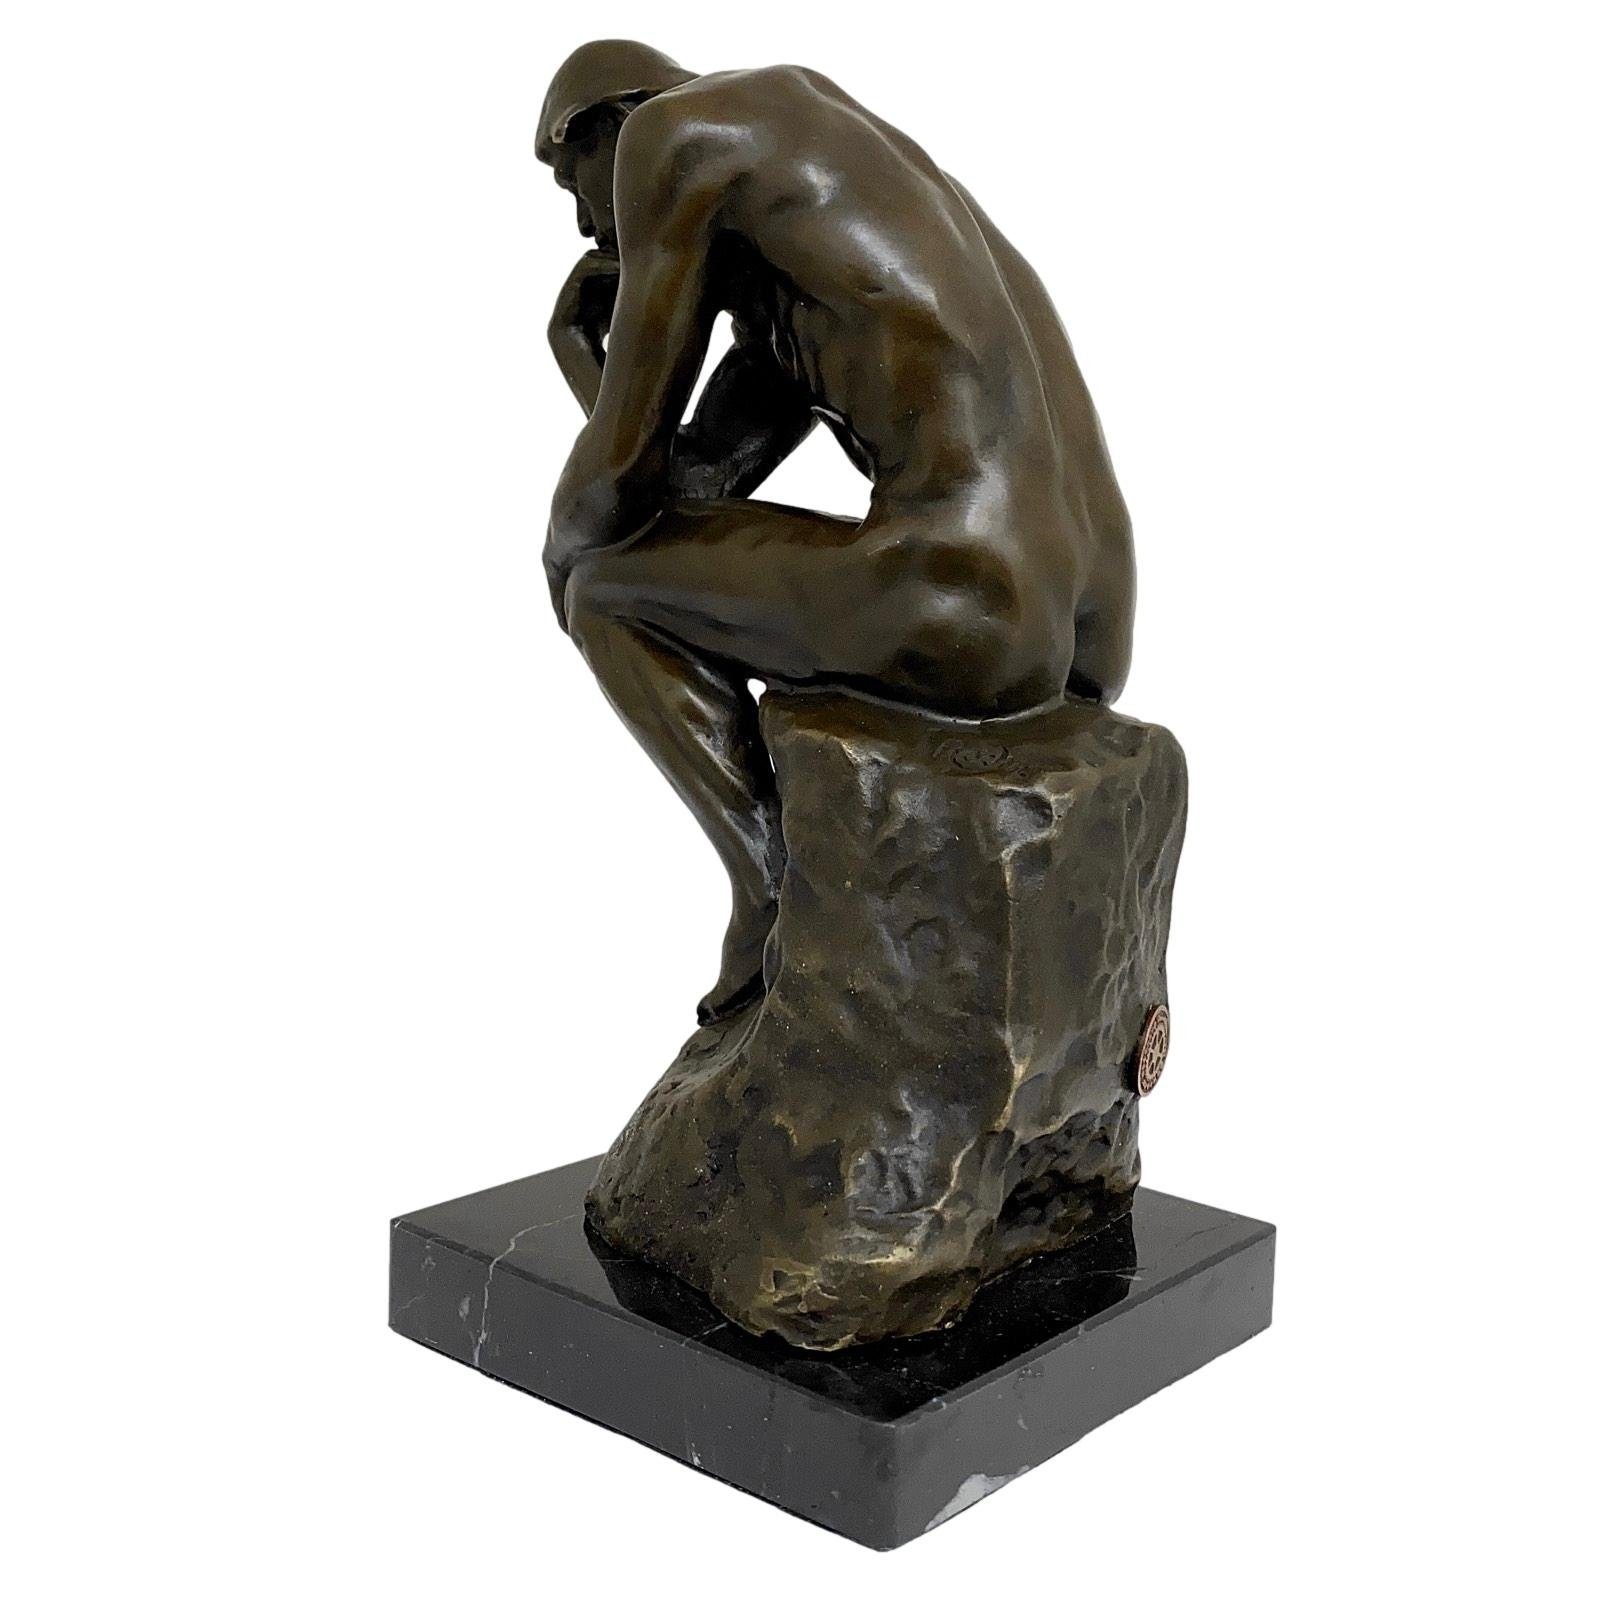 Aubaho Skulptur Bronzeskulptur 23cm Ko Skulptur Bronzefigur Denker Mann Rodin der nach